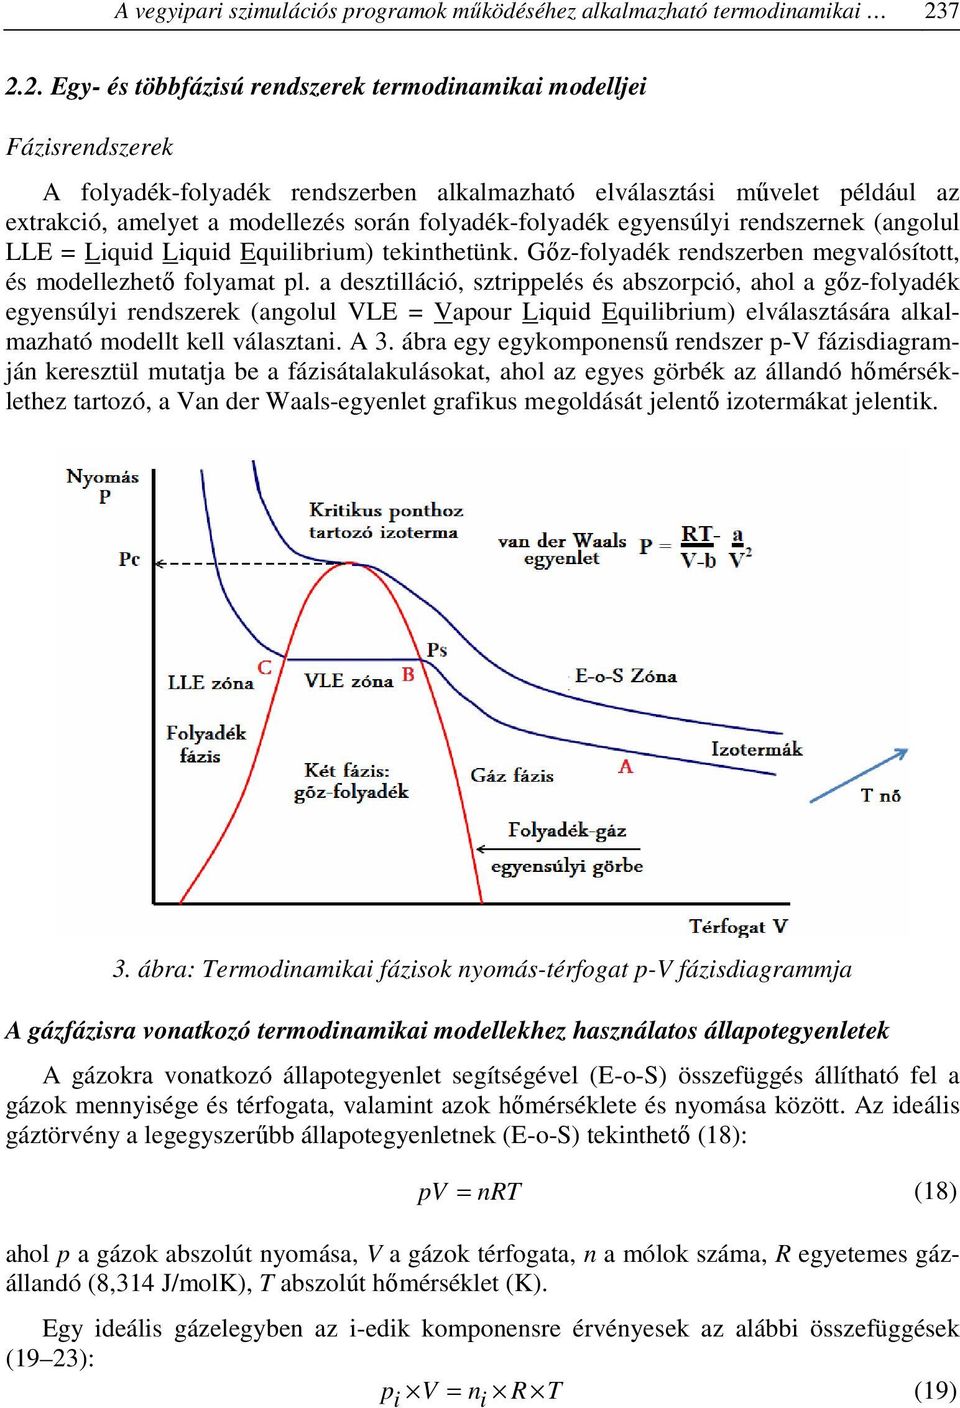 folyadék-folyadék egyensúlyi rendszernek (angolul LLE = Liquid Liquid Equilibrium) tekinthetünk. Gőz-folyadék rendszerben megvalósított, és modellezhető folyamat pl.